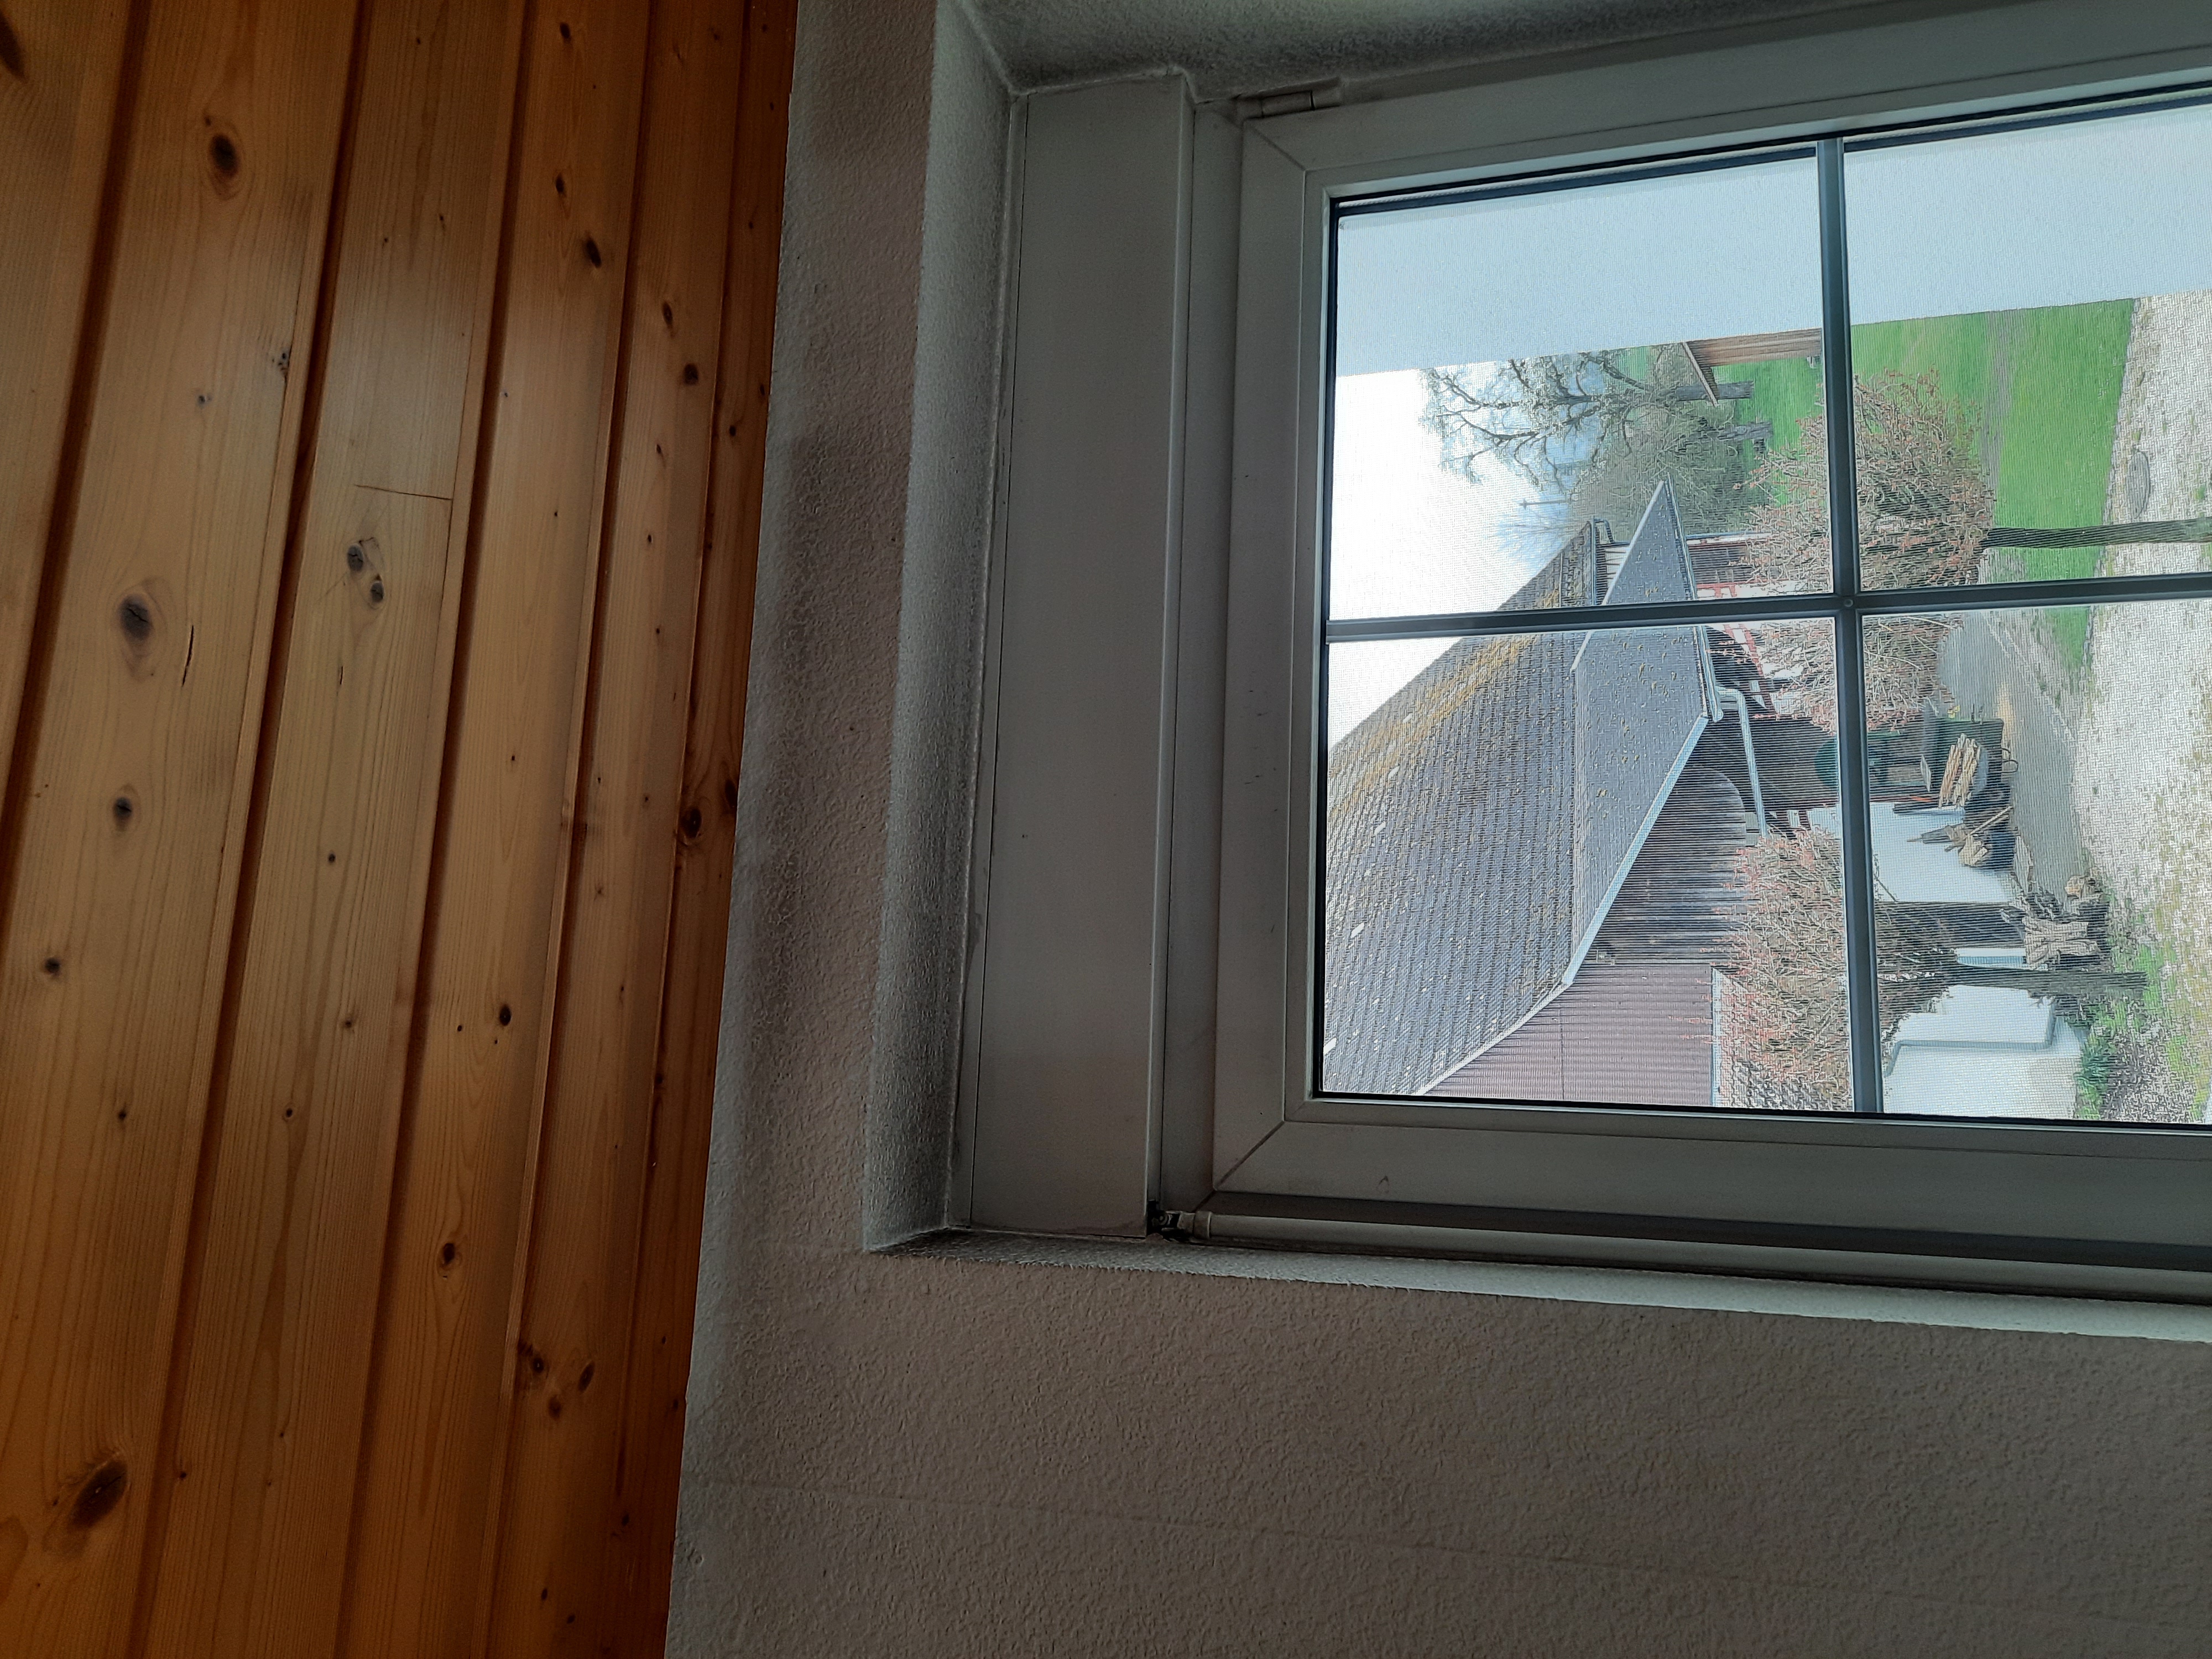 Verrußter Fensterrahmen und Tapeten
Rahmen bleibt nach Reinigung grau.